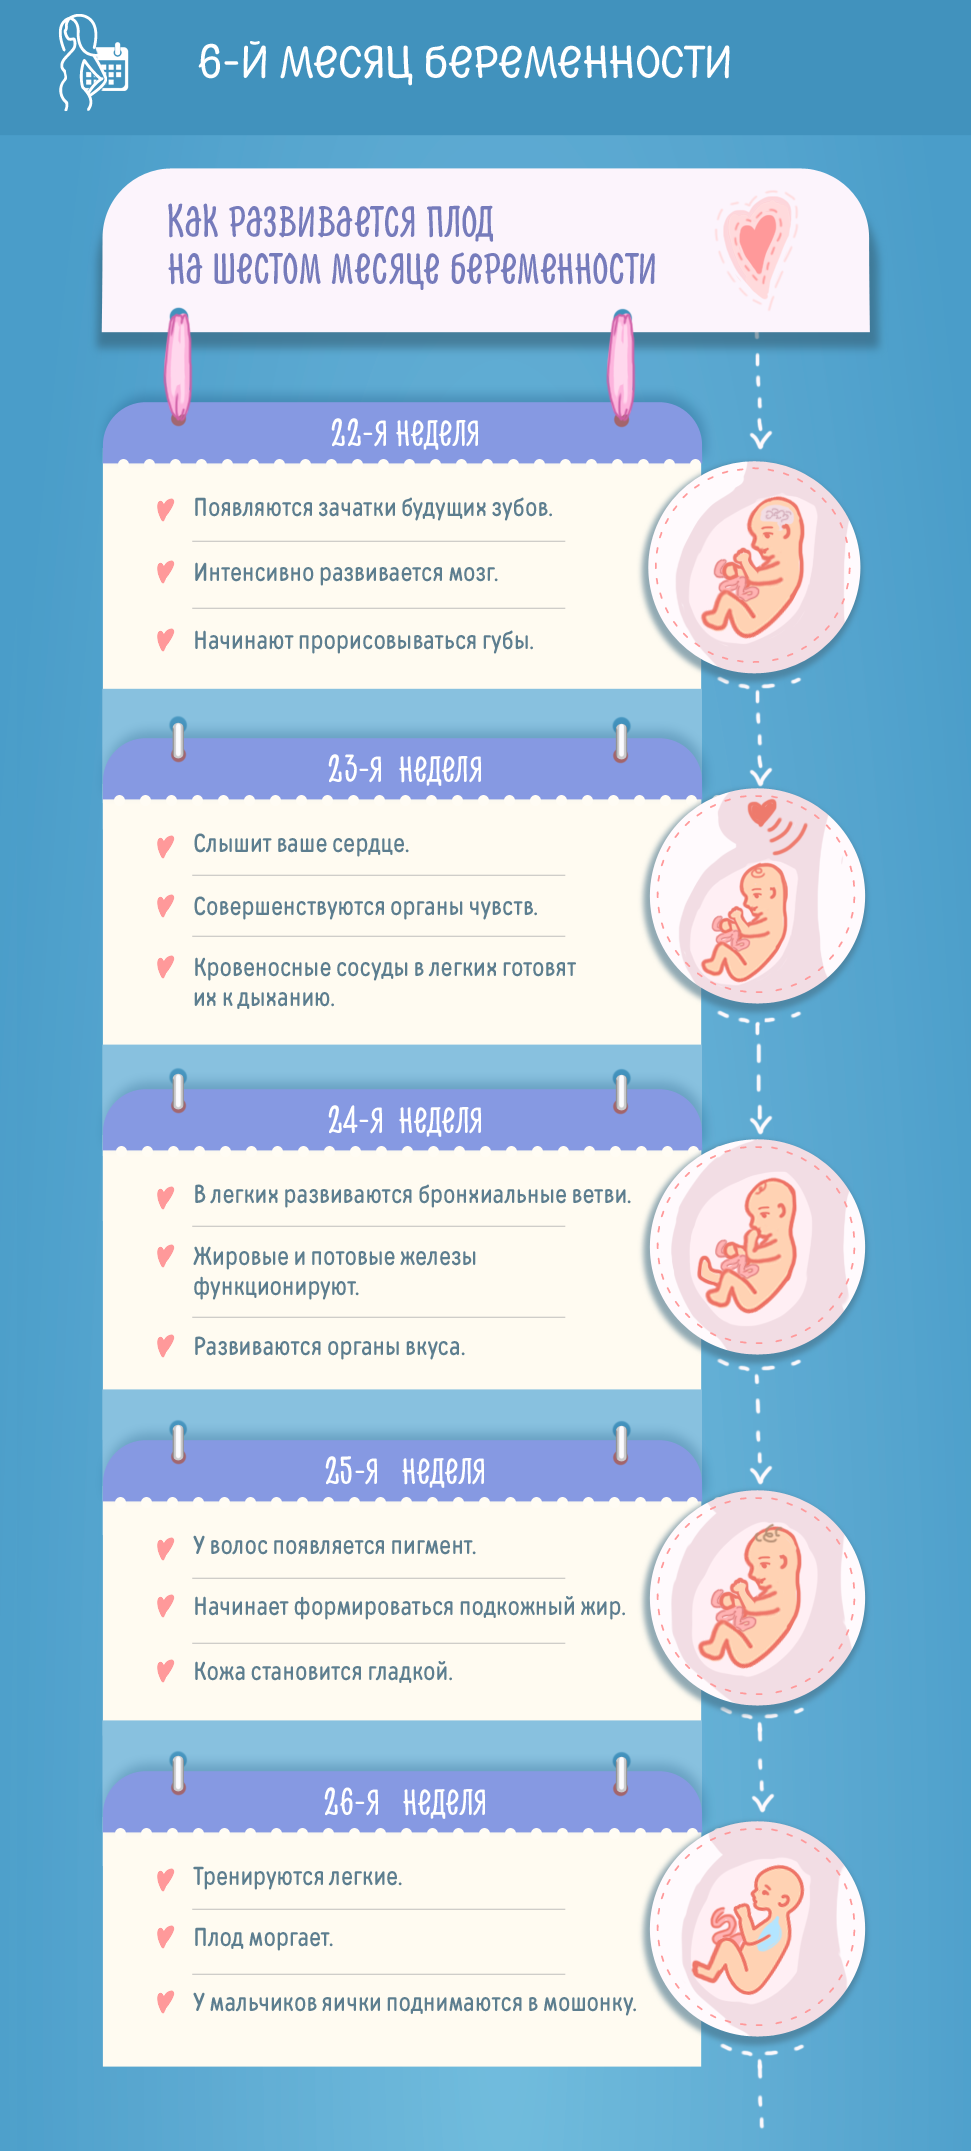 Шестой месяц беременности: изменения в женском организме и развитие плода по неделям